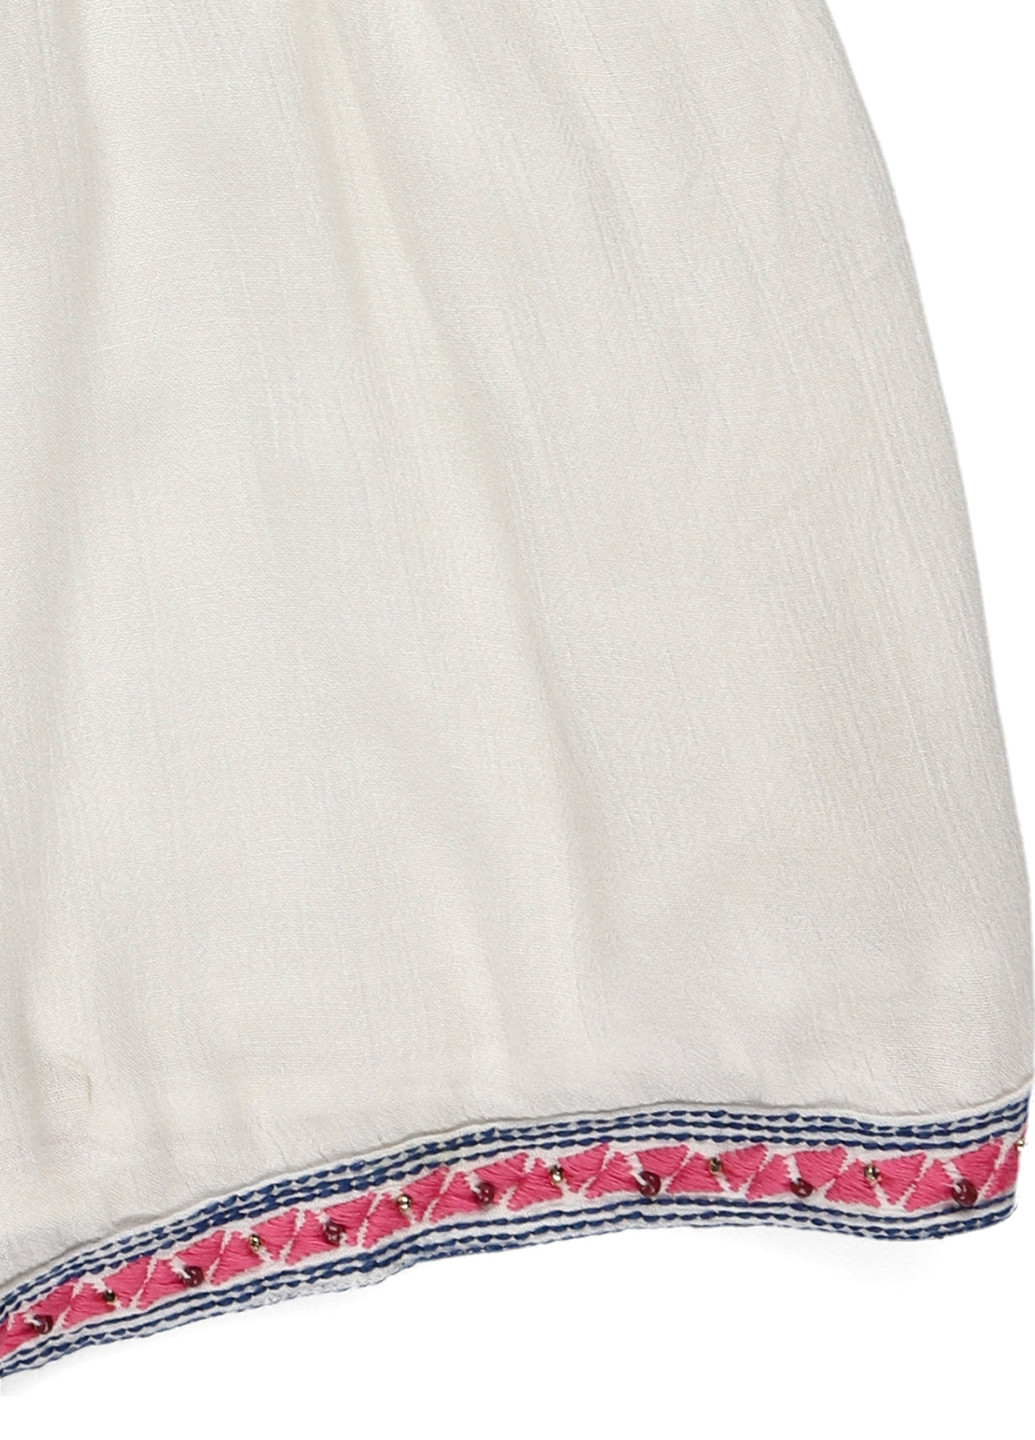 Комбинезон Goa комбинезон-шорты орнамент белый кэжуал вискоза